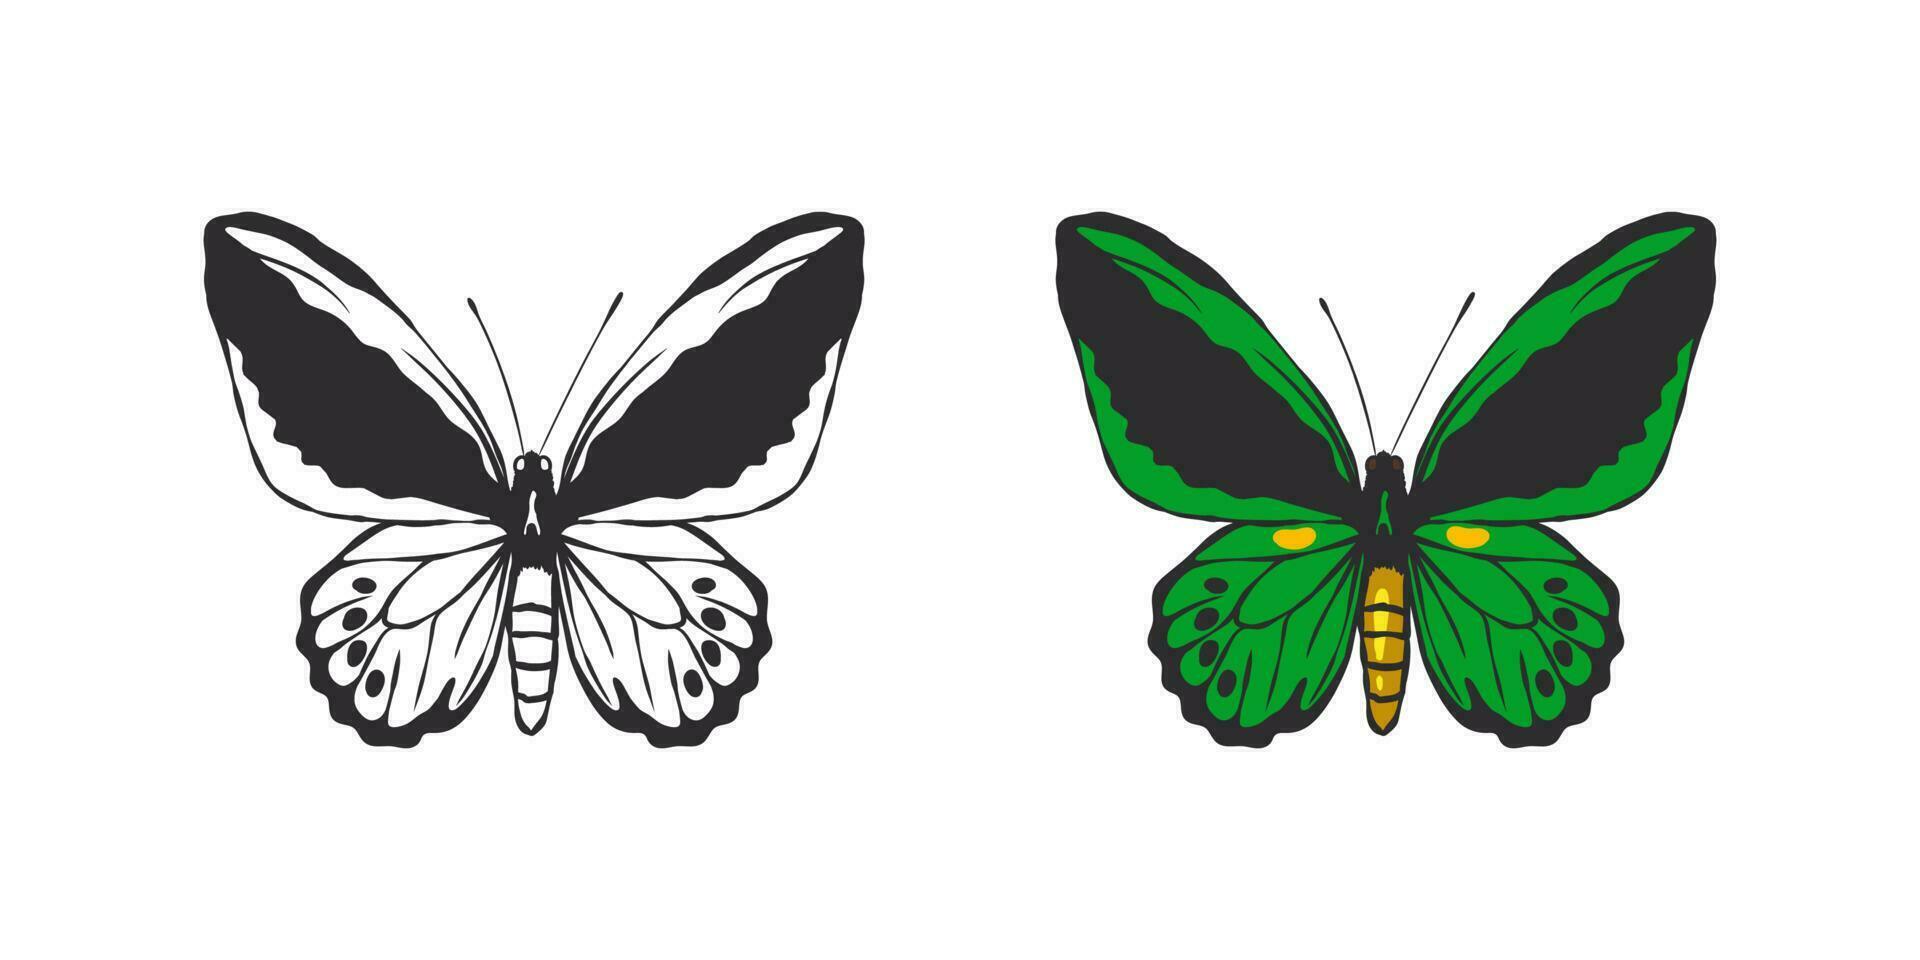 farfalle immagini. mano disegnato verde la farfalla. immagini di divertente farfalle. vettore scalabile grafica